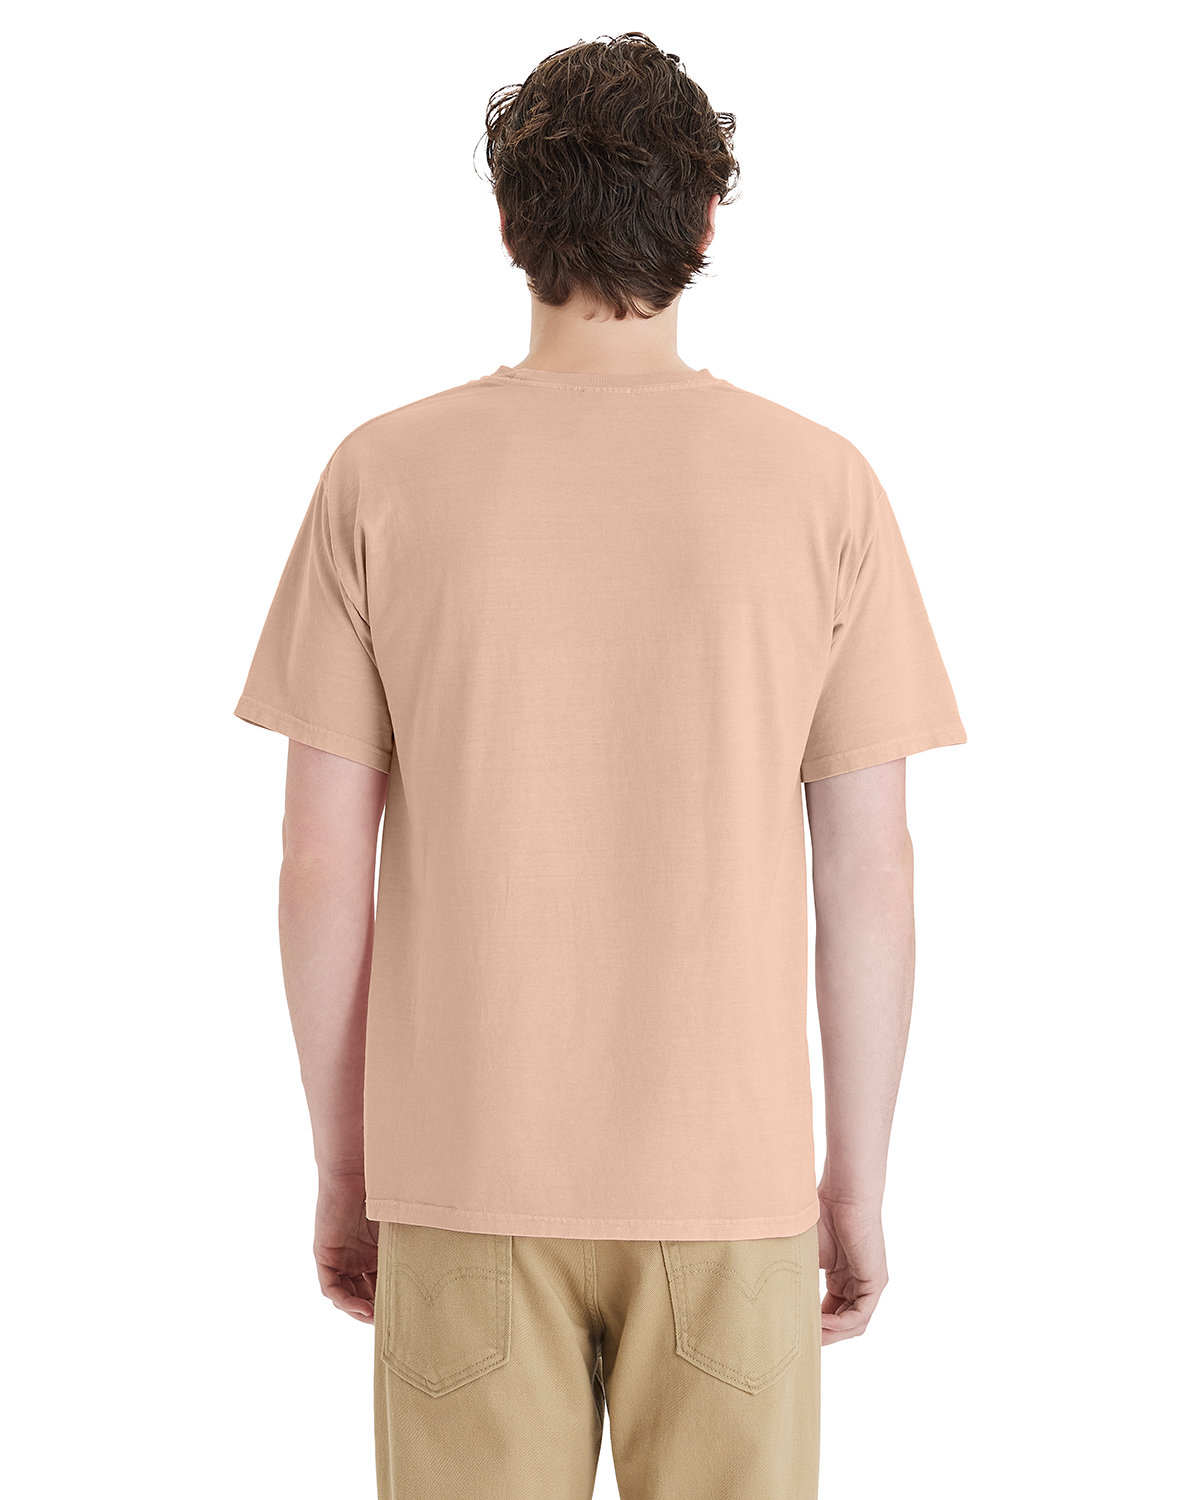 Unisex Botanical Dye T-Shirt